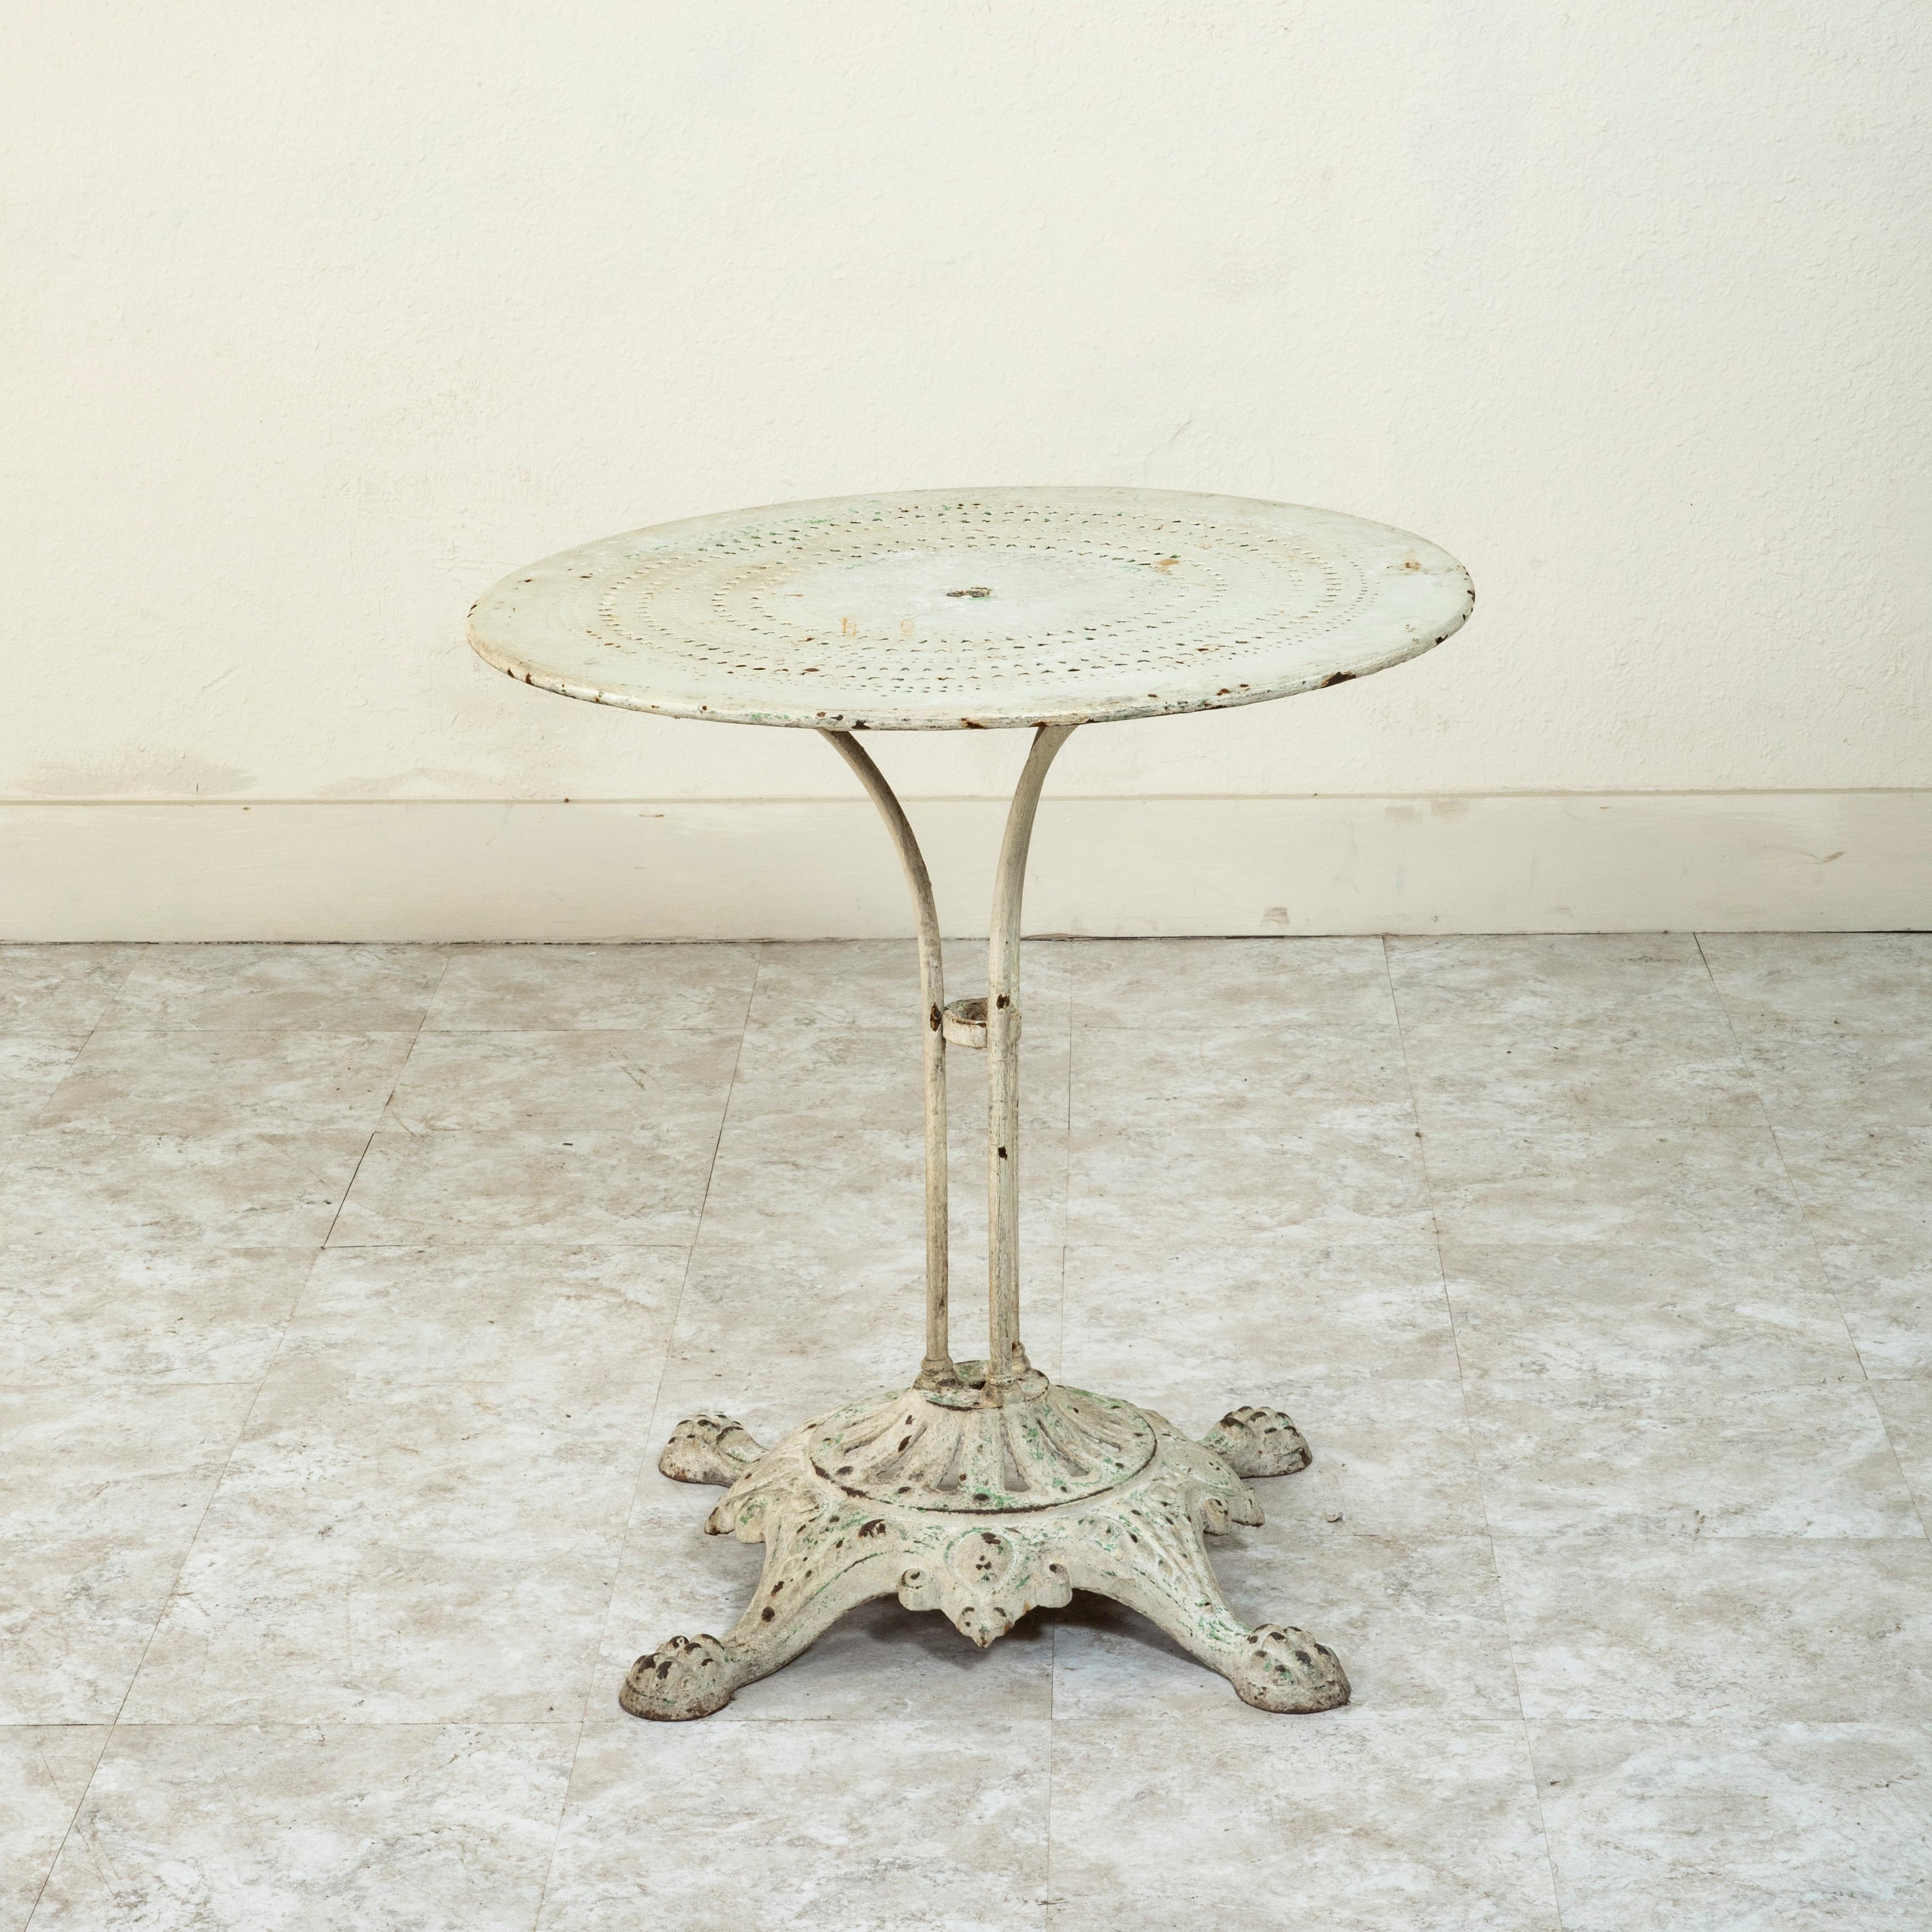 Dieser französische Gartentisch aus Eisen aus dem späten neunzehnten Jahrhundert hat eine durchbrochene Metallplatte mit einem Loch in der Mitte für einen Regenschirm auf einem gusseisernen Sockel. Die Platte wird von vier Eisenstangen getragen, die